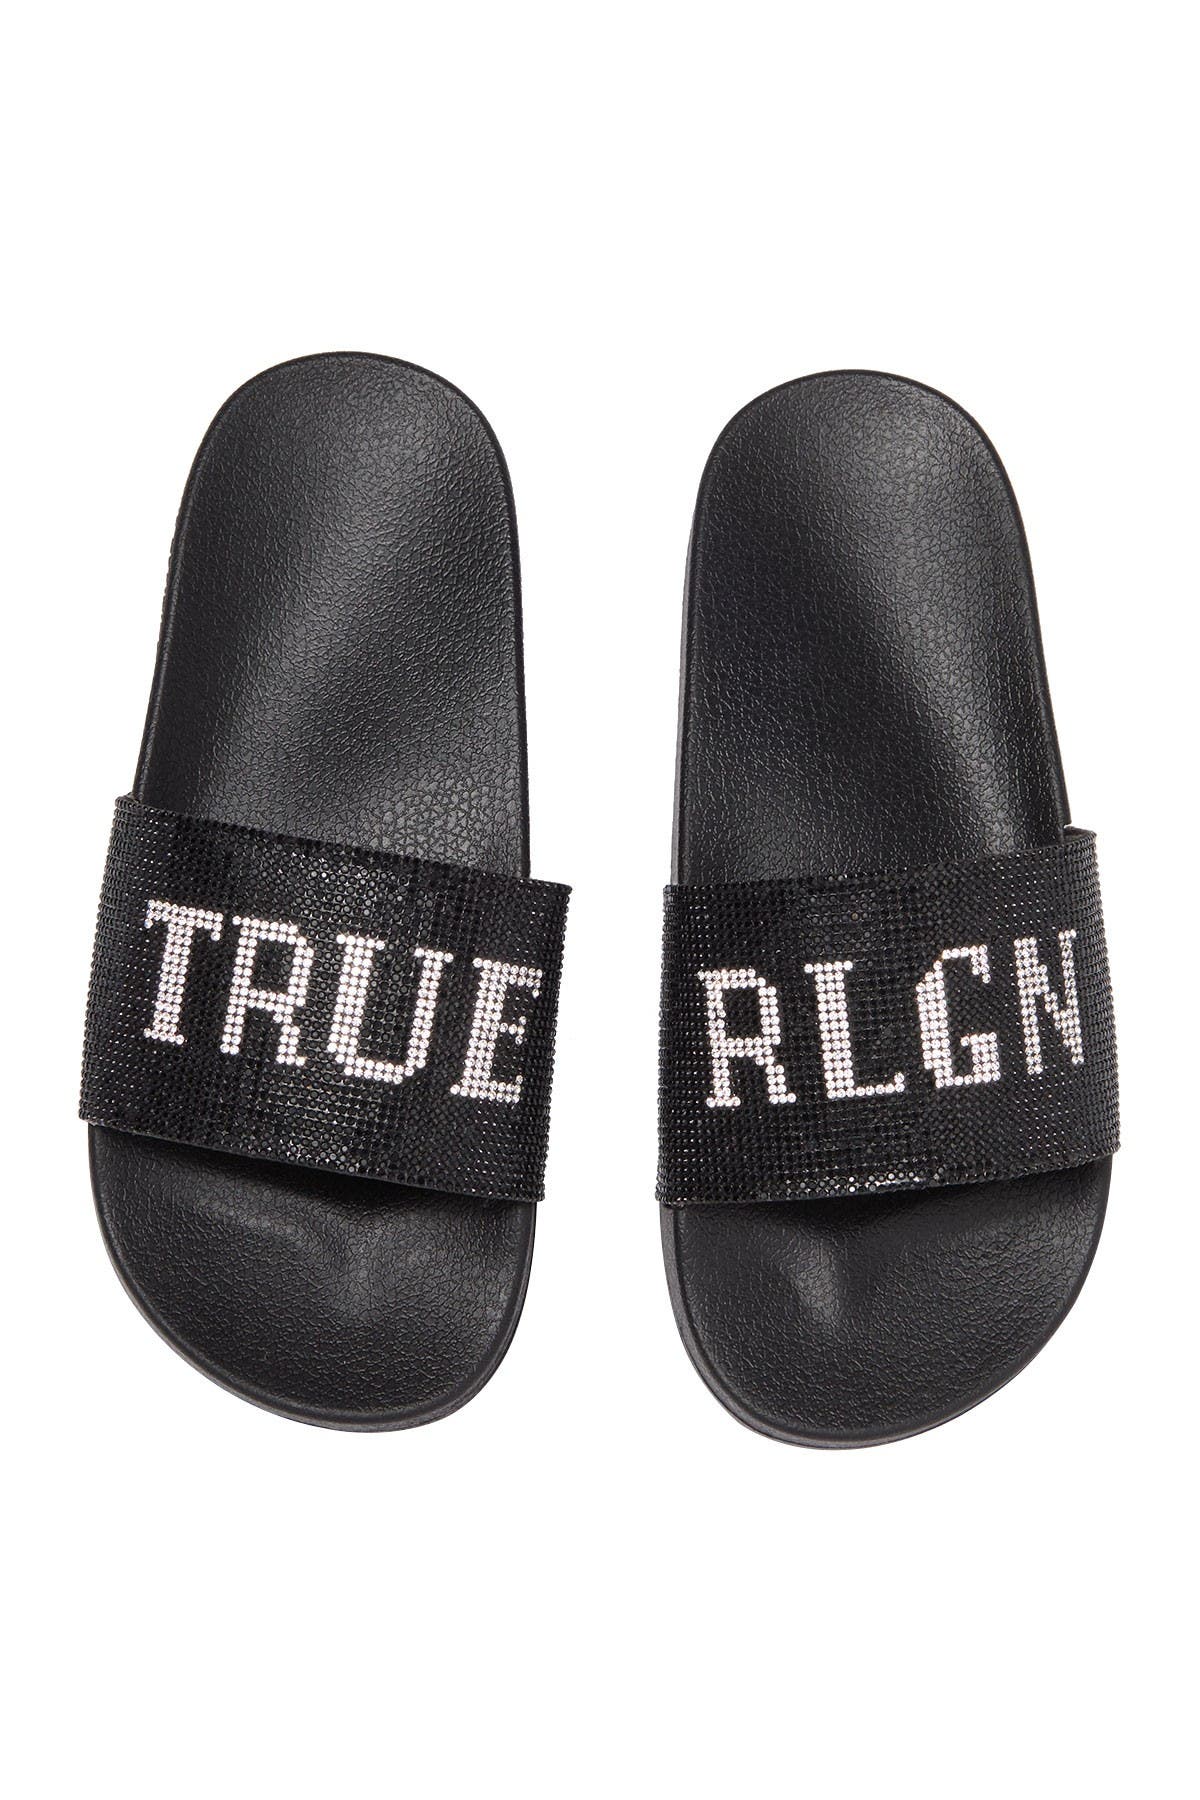 true religion flip flops mens